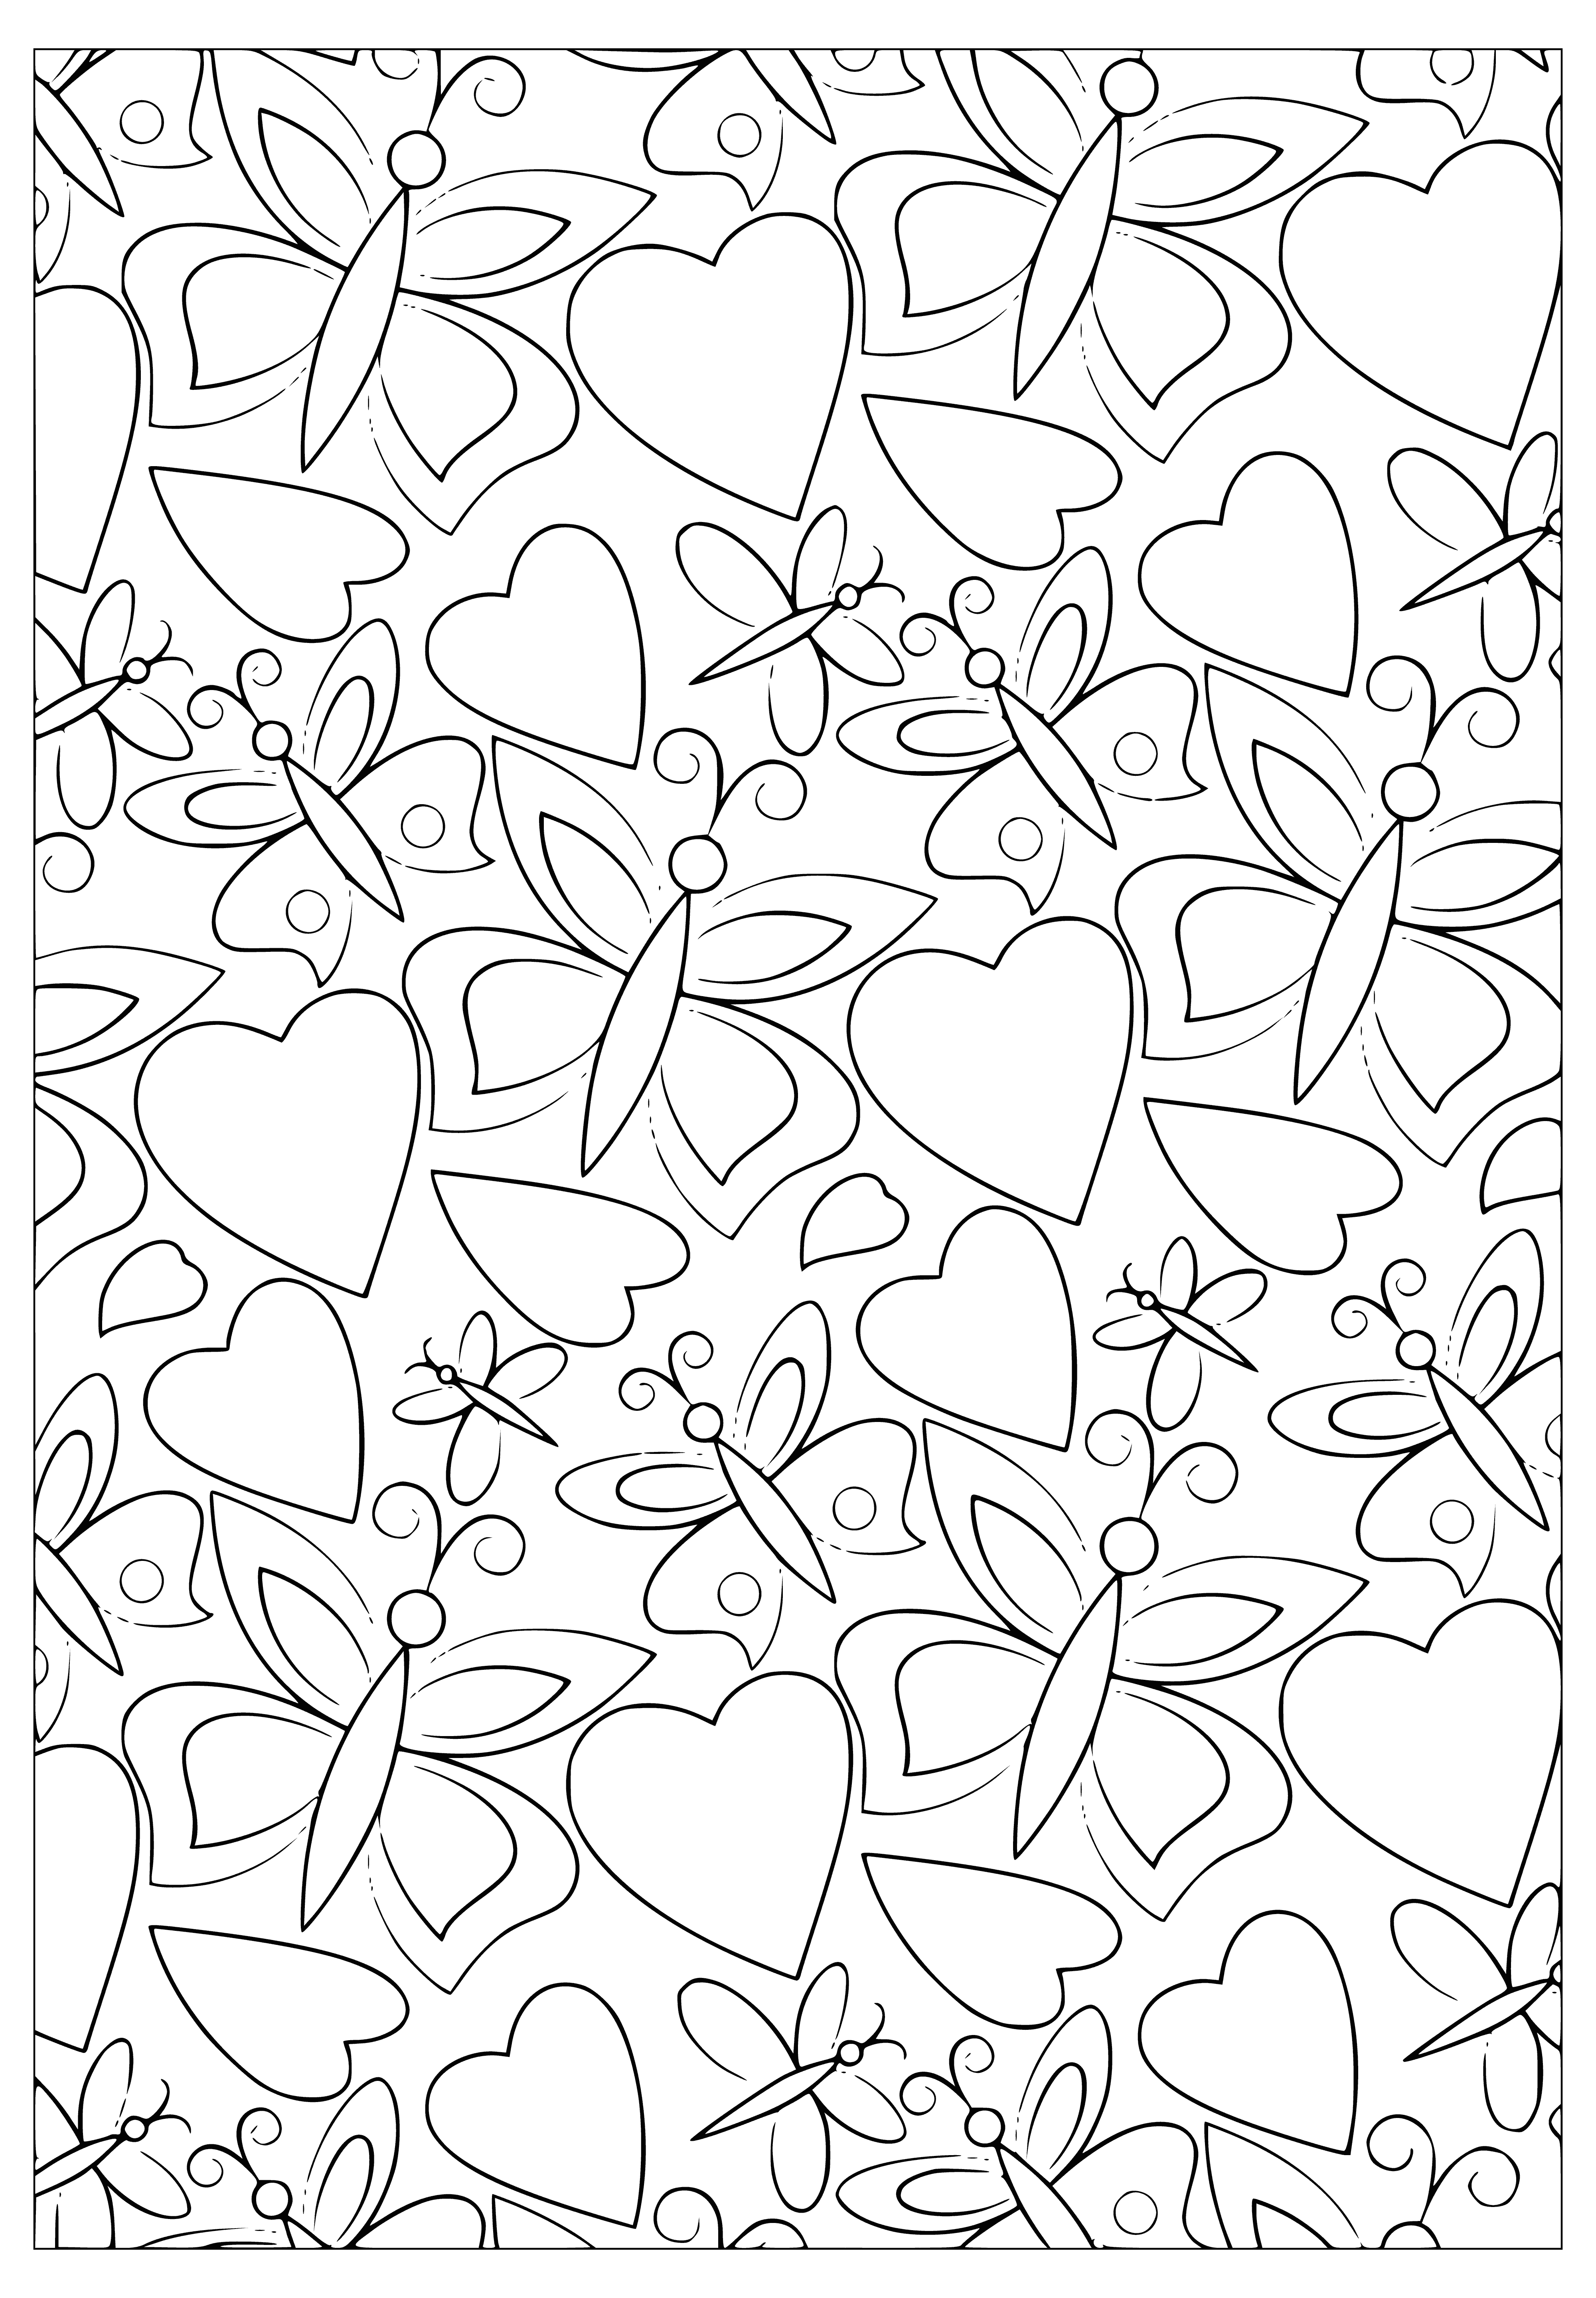 Kalpler ve kelebekler boyama sayfası